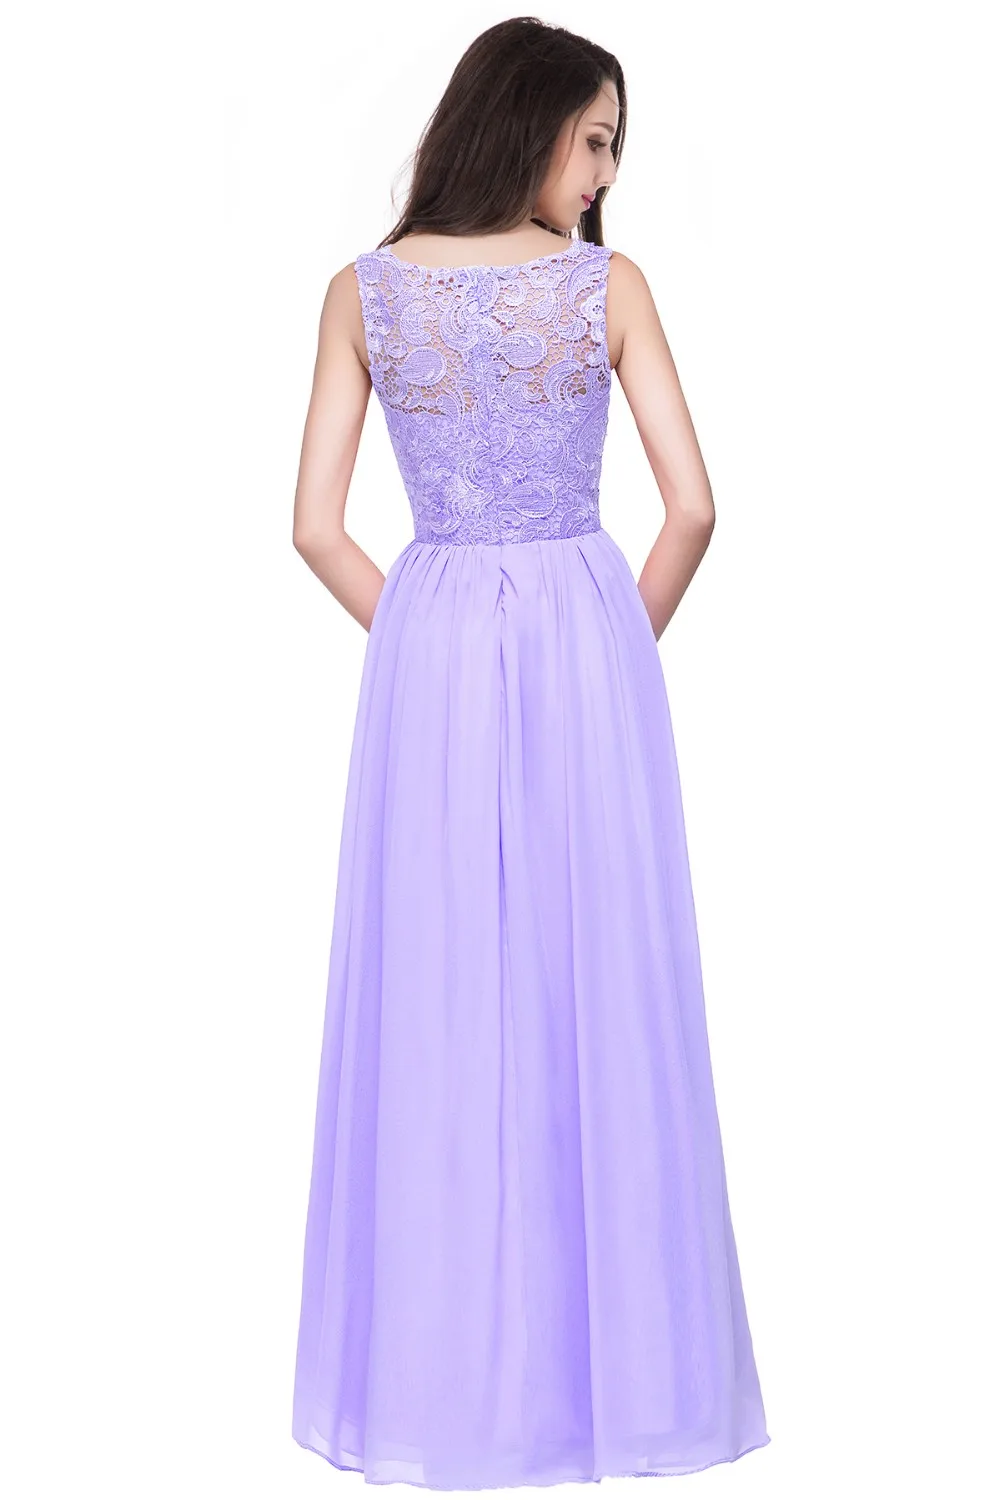 Robes de demoiseur d'honneur ТРАПЕЦИЕВИДНОЕ длинное кружевное голубое фиолетовое платье подружки невесты длинные шифоновые вечерние платья на выпускной